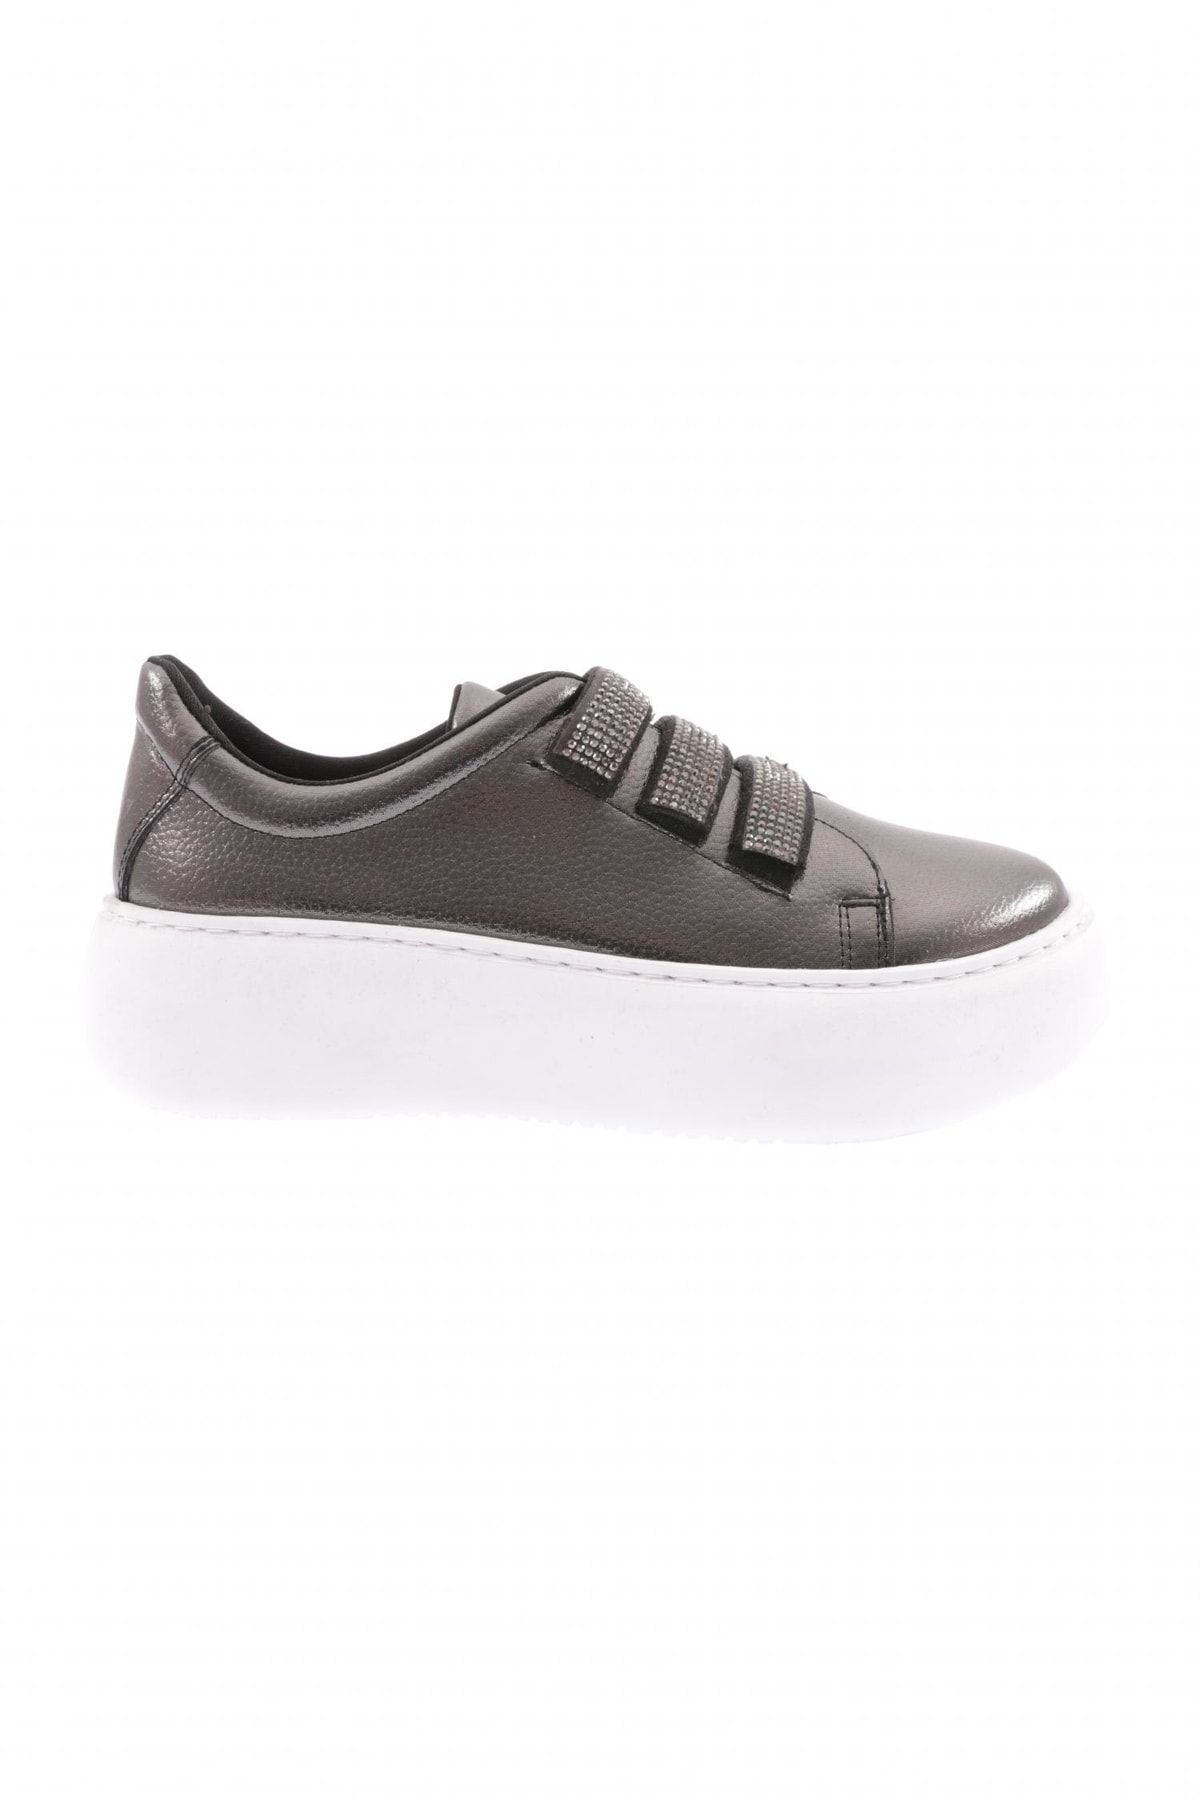 Dgn Metalik - 878-23y Kadın Cırtlı Bantlari Silver Taşlı Sneaker Ayakkabı Platin Rolax